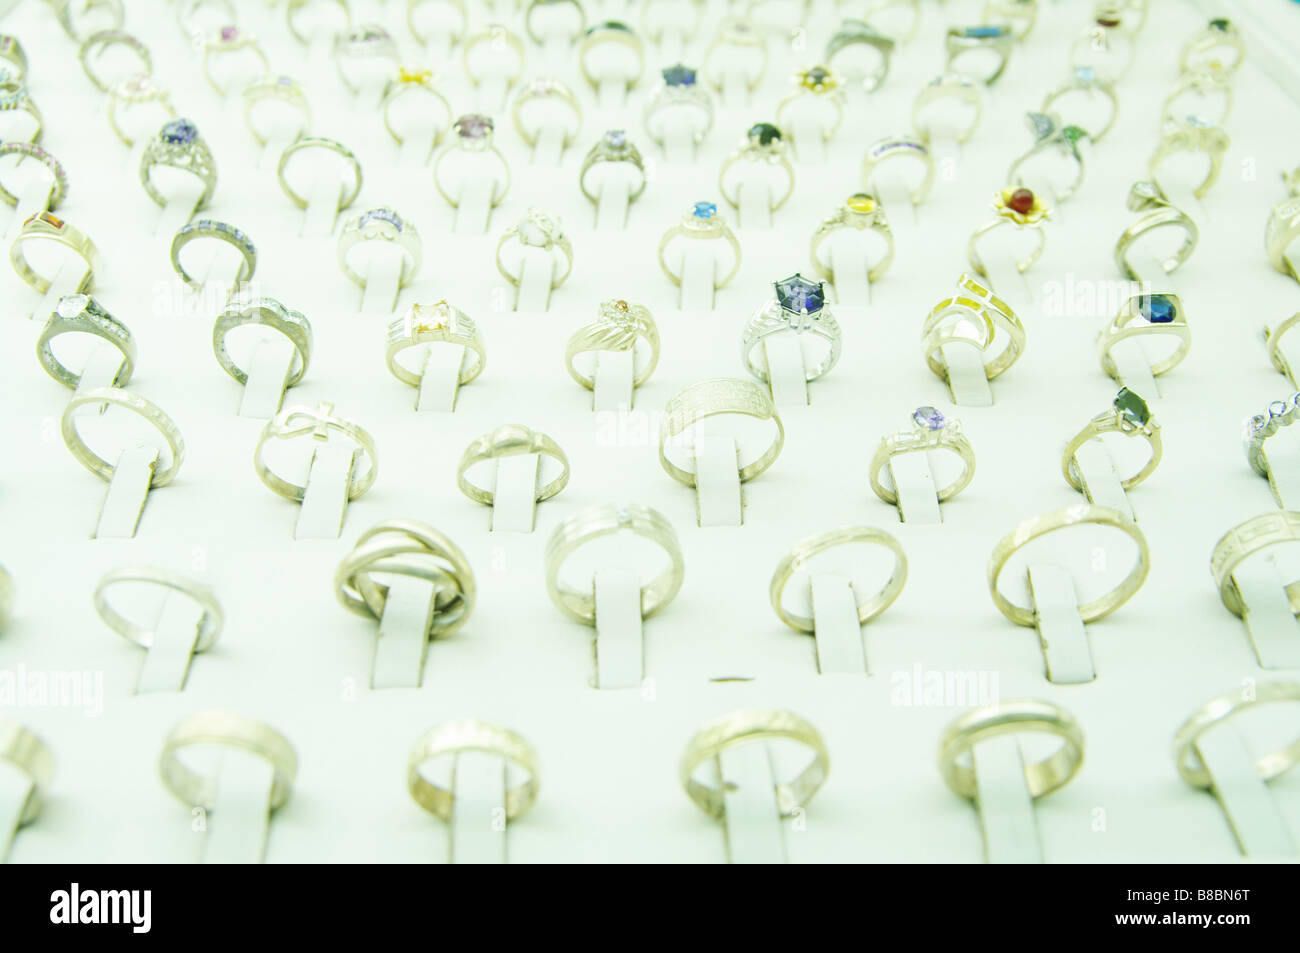 Molti gioielli anelli in una presa di corrente Foto Stock